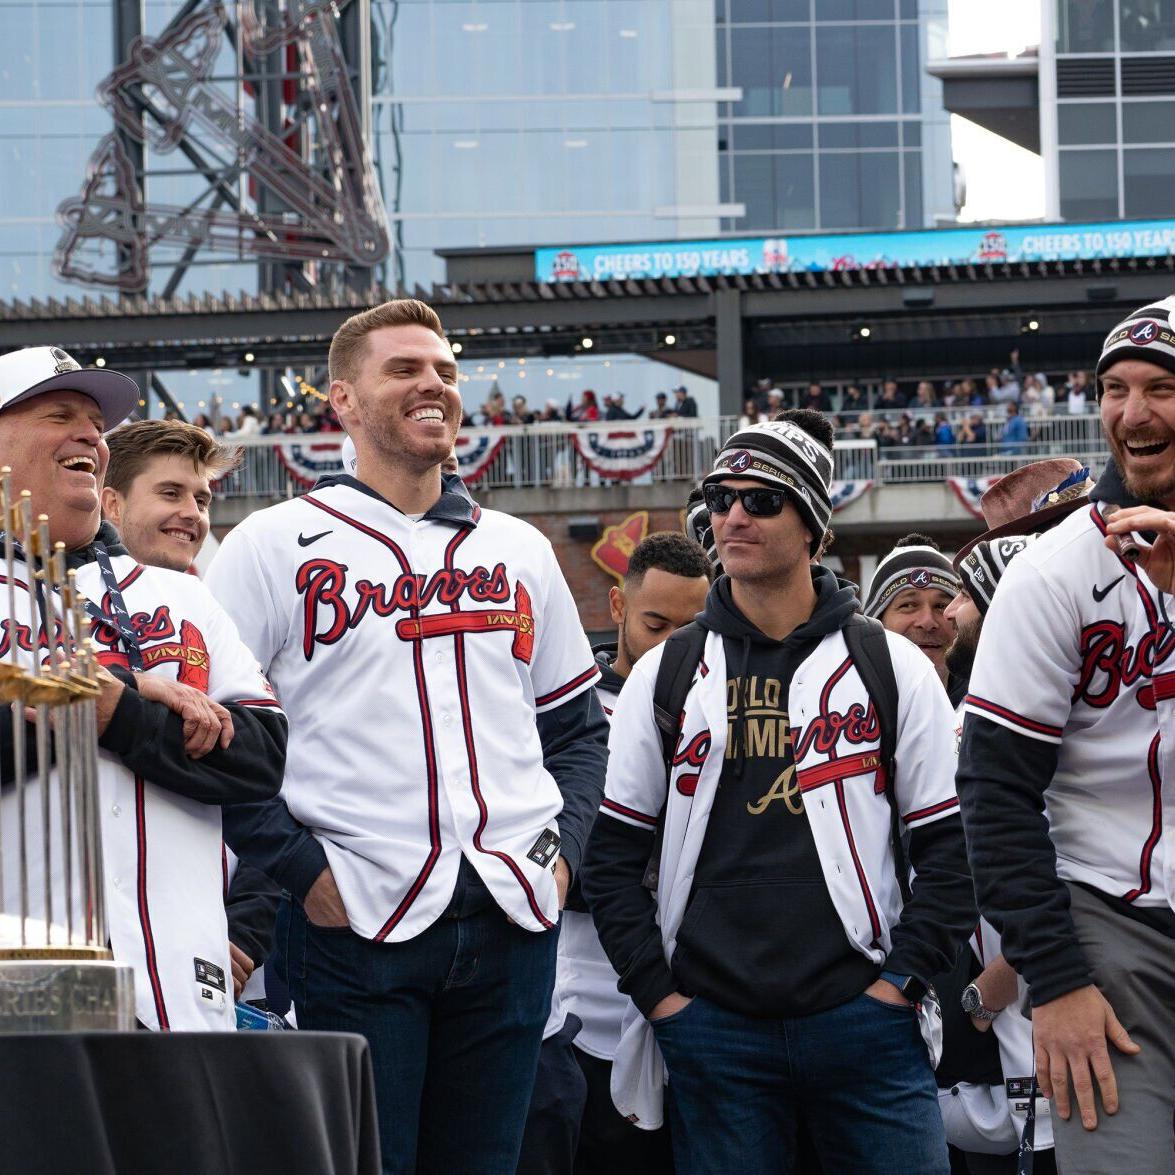 Atlanta Braves taking World Series trophy on 151-stop tour through